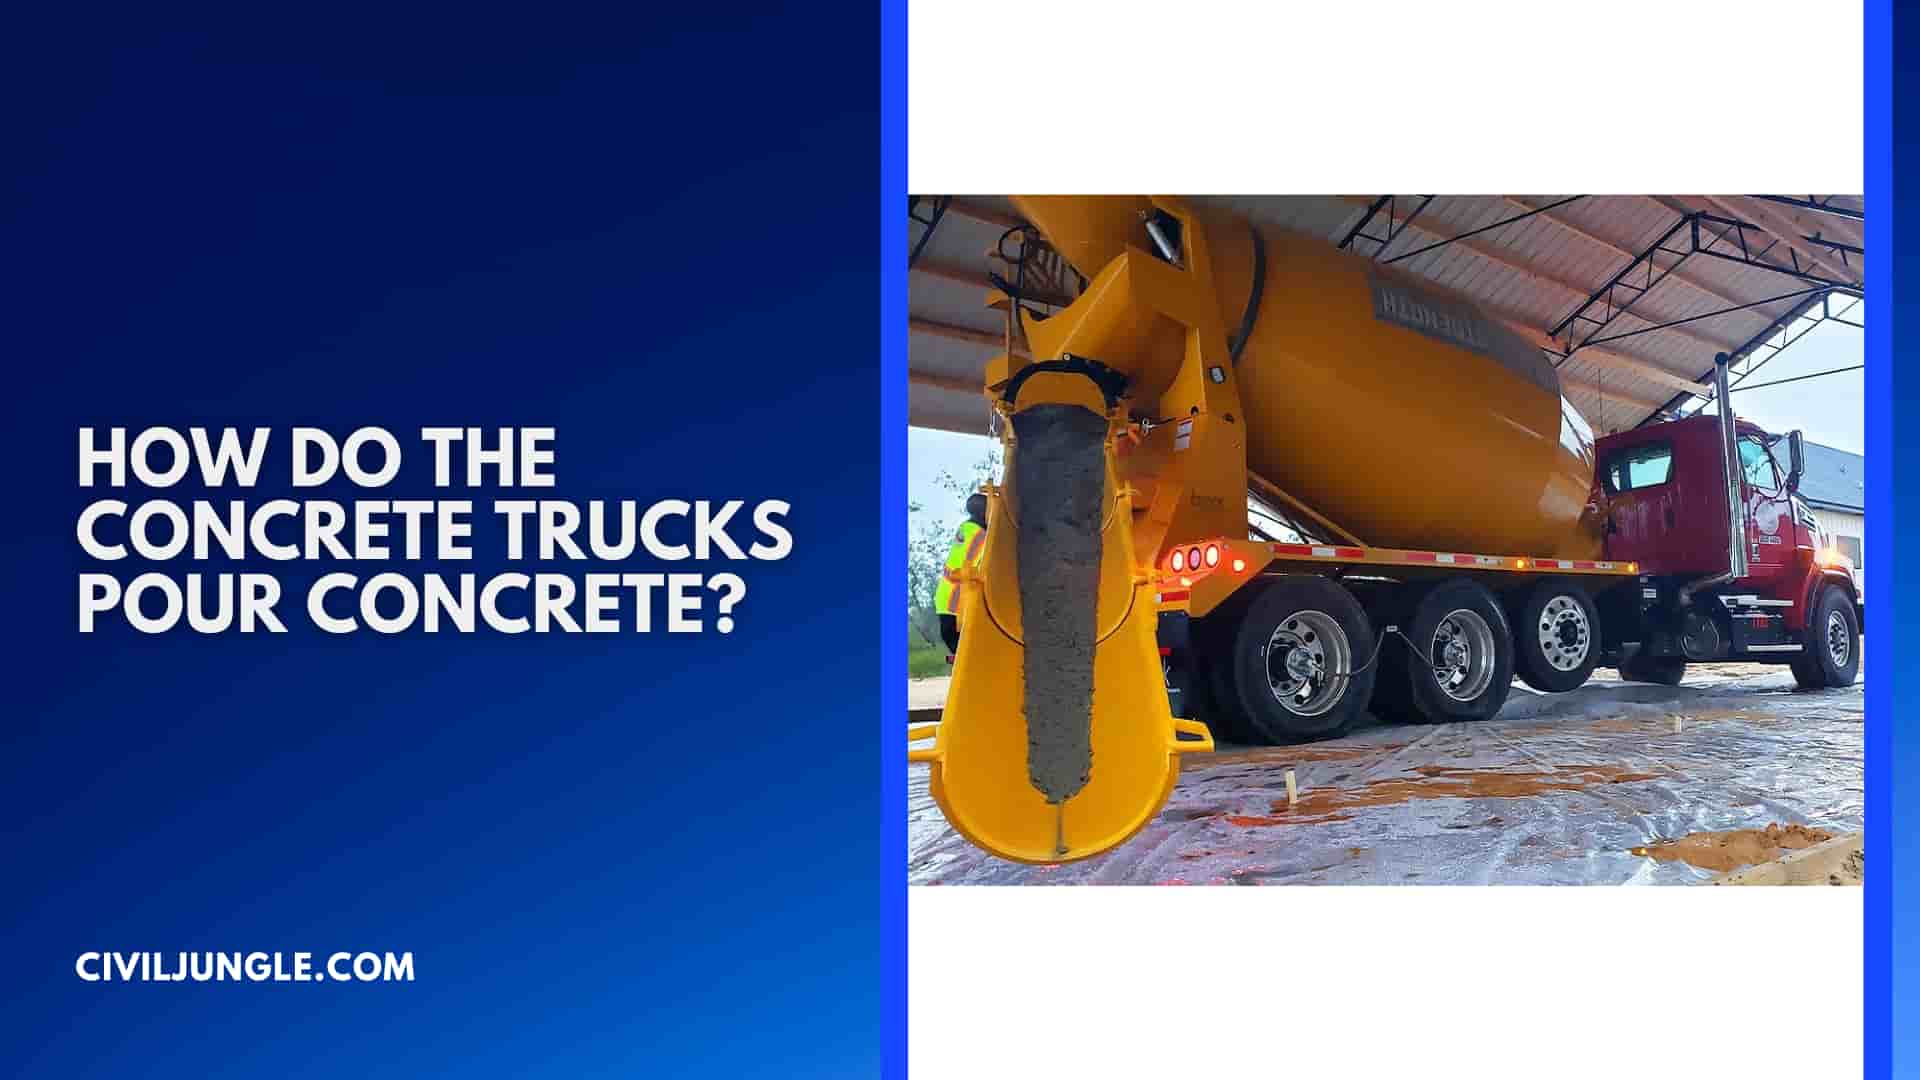 How Do the Concrete Trucks Pour Concrete?